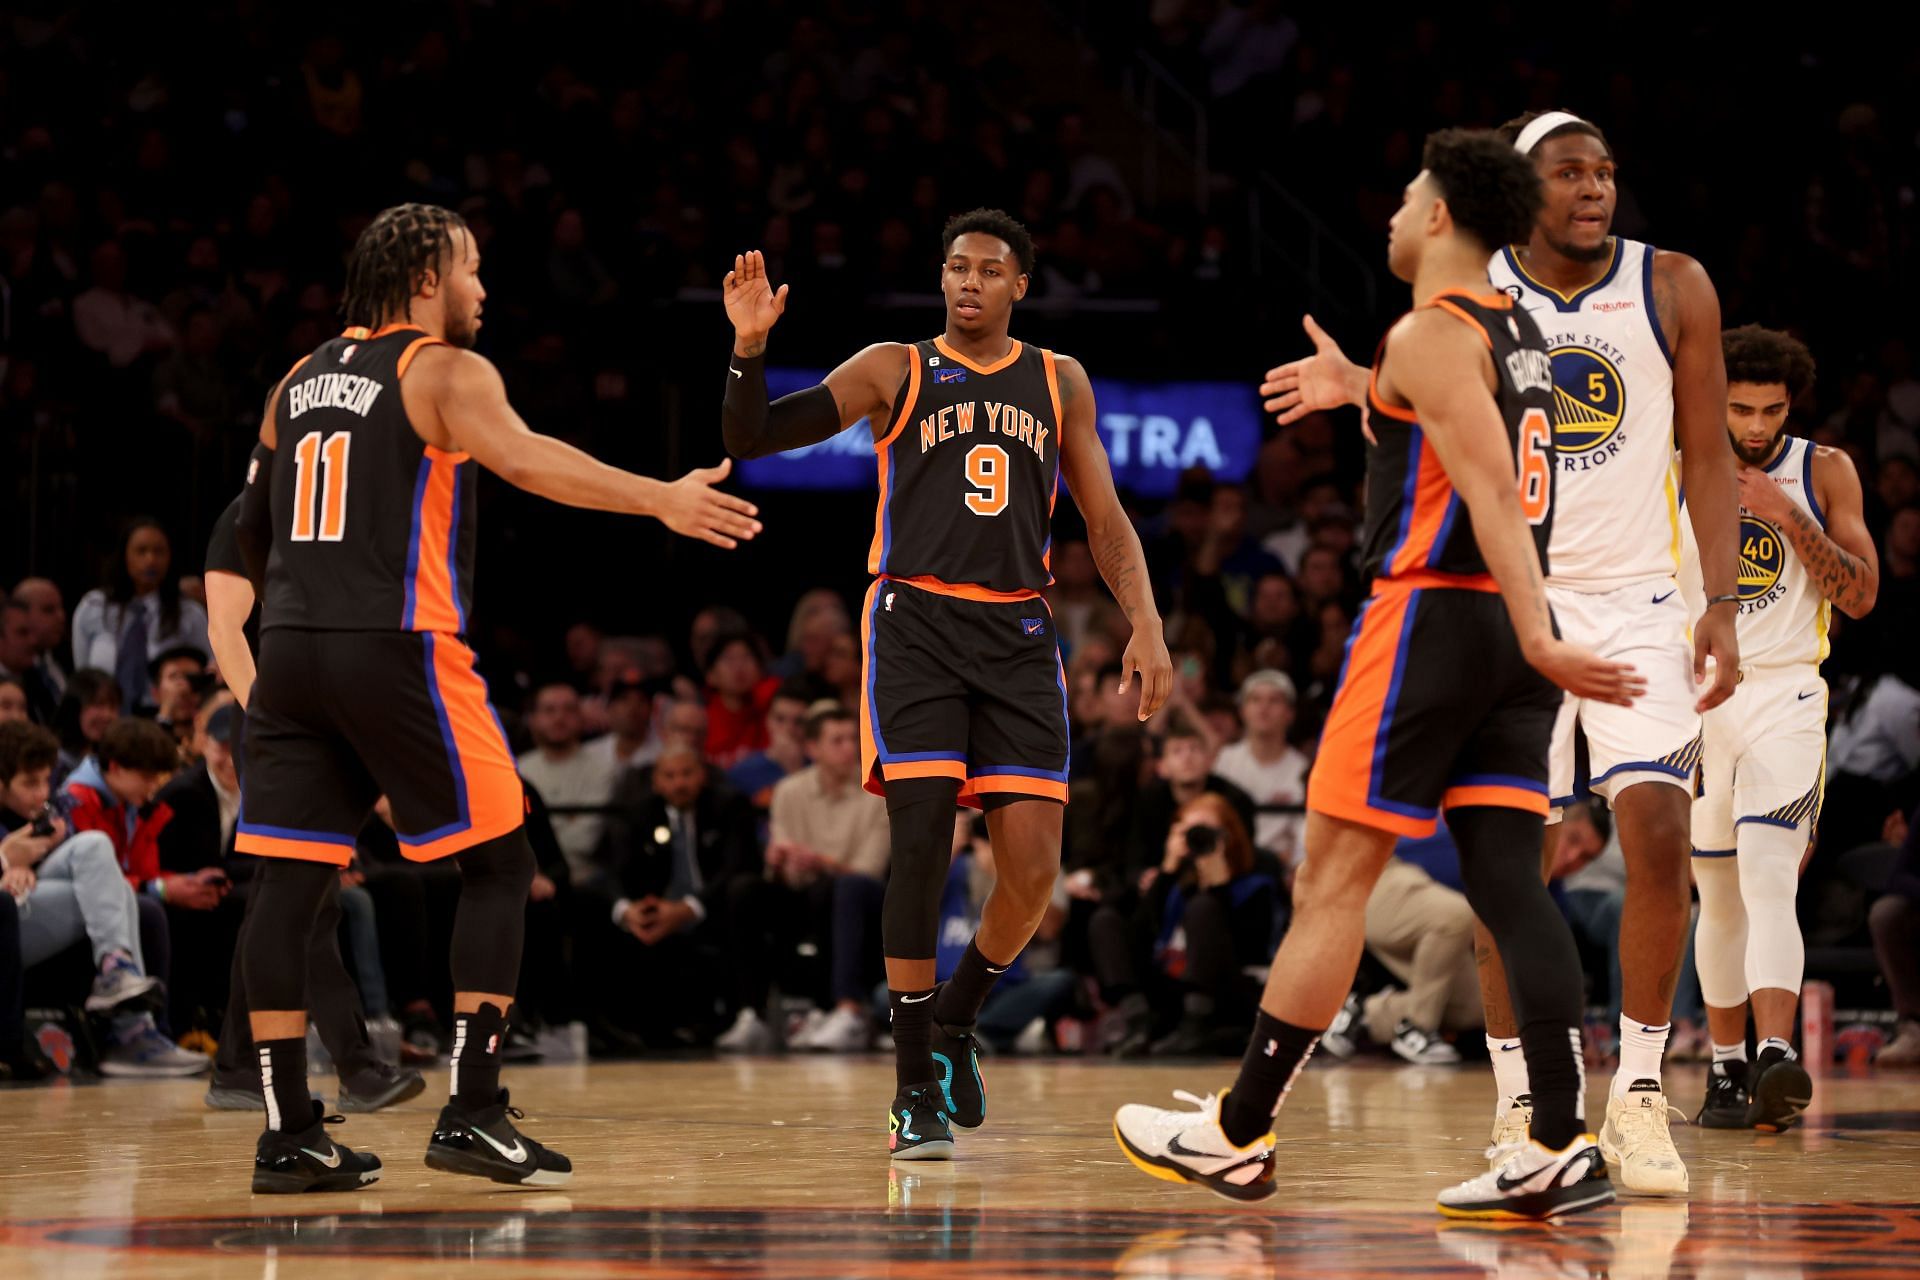 Golden State Warriors v New York Knicks